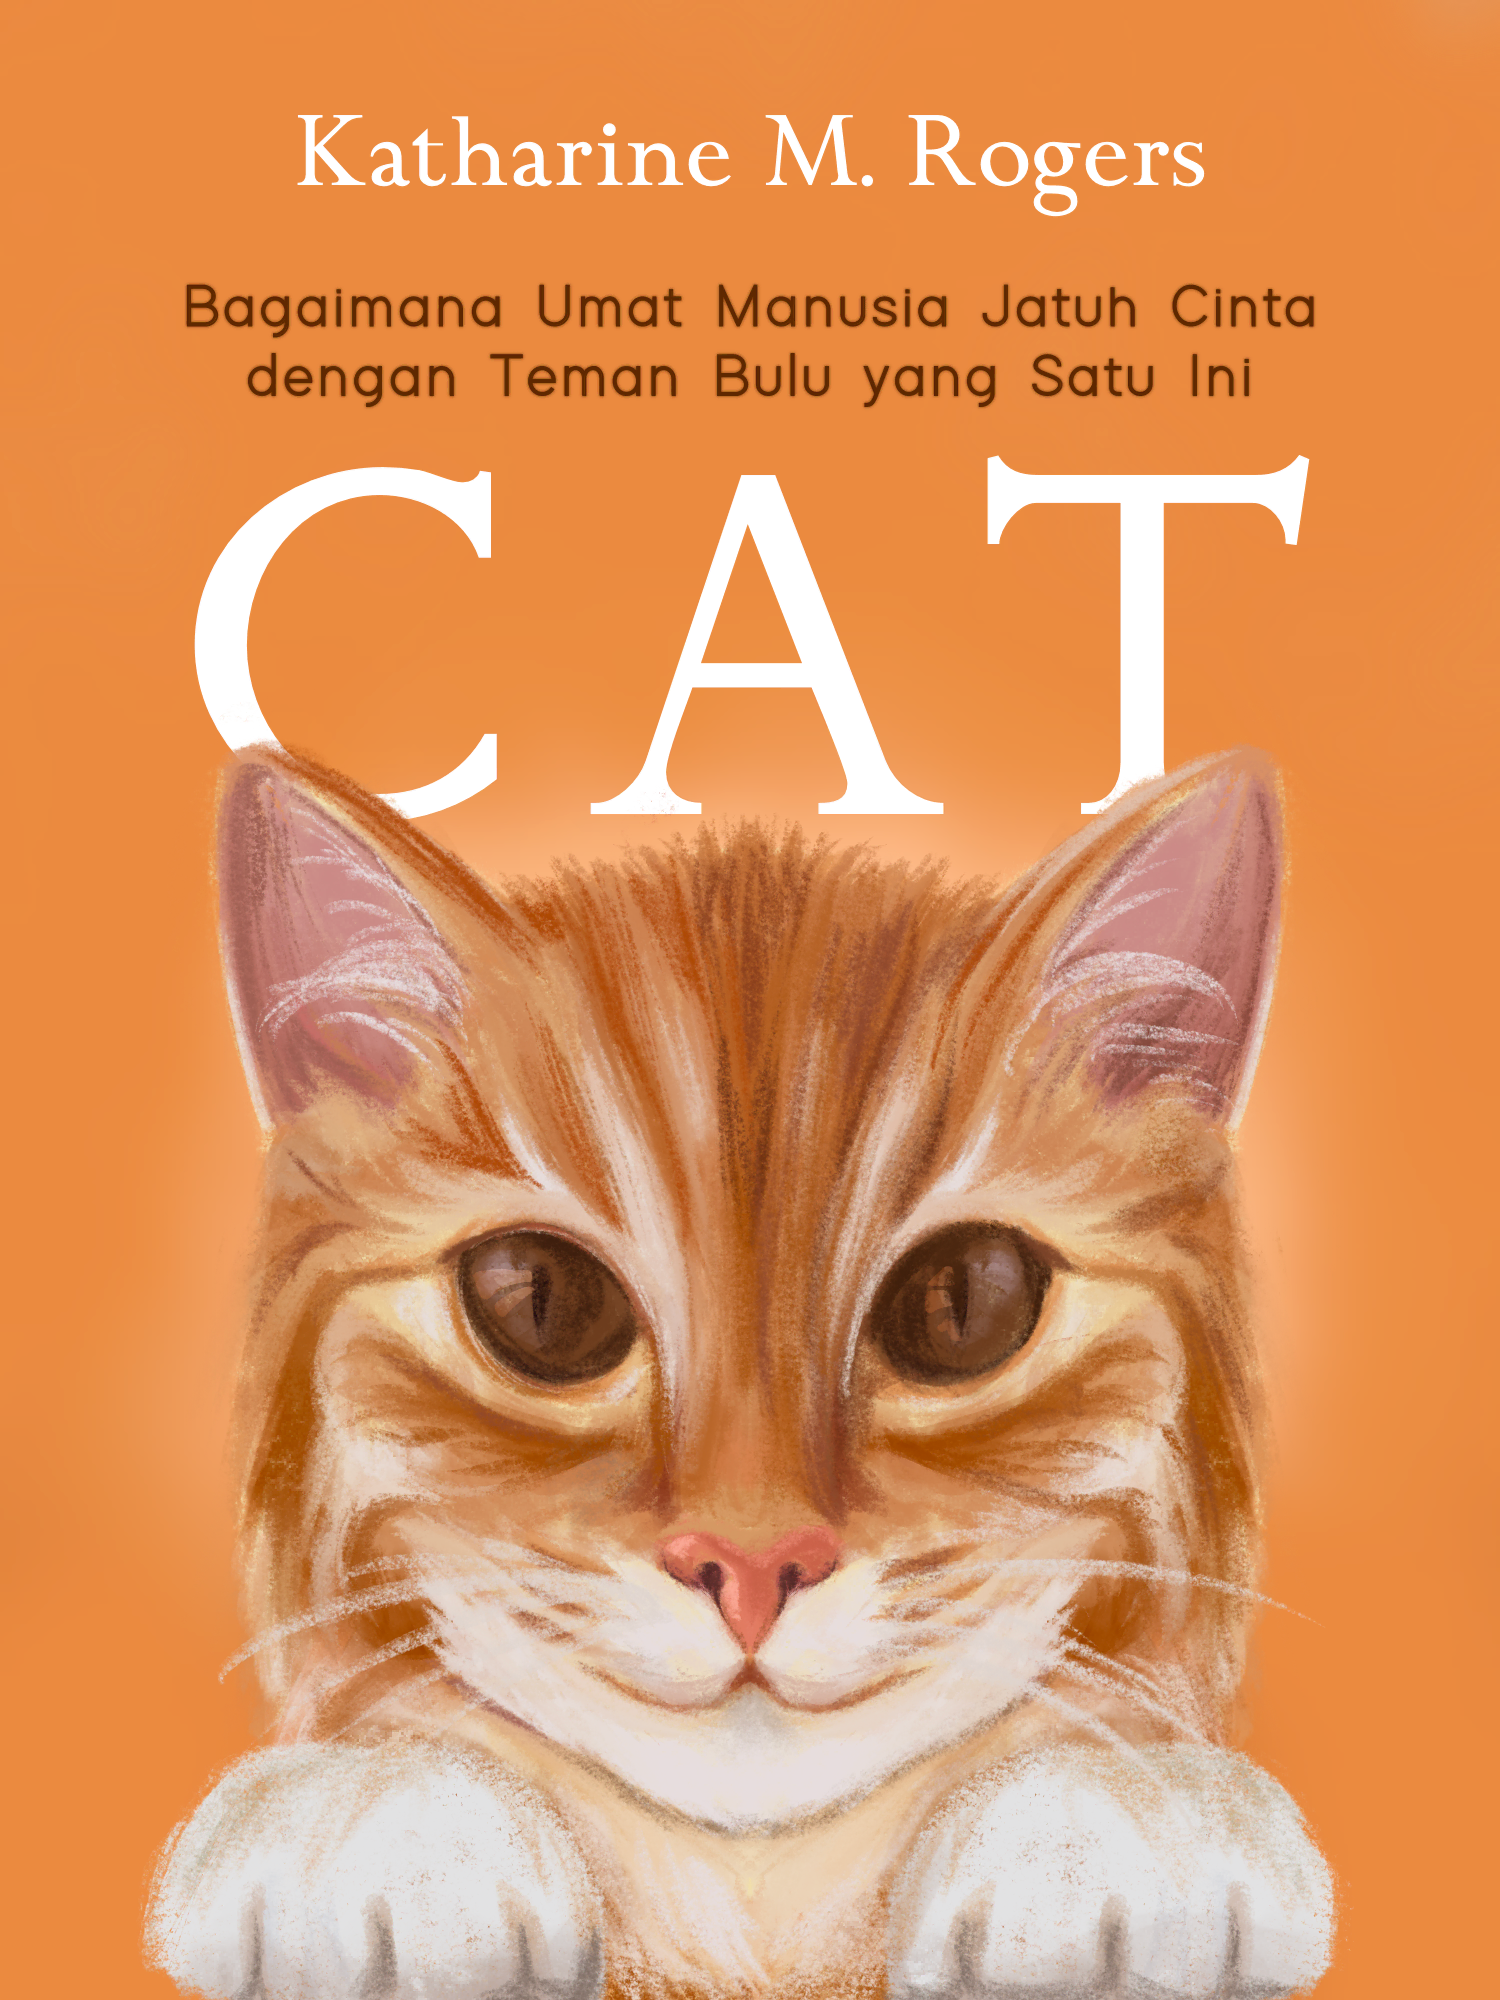 #6 Sekarang, kita memandang kucing sebagai seekor individu dan merayakan kemandirian serta kepandaian mereka.